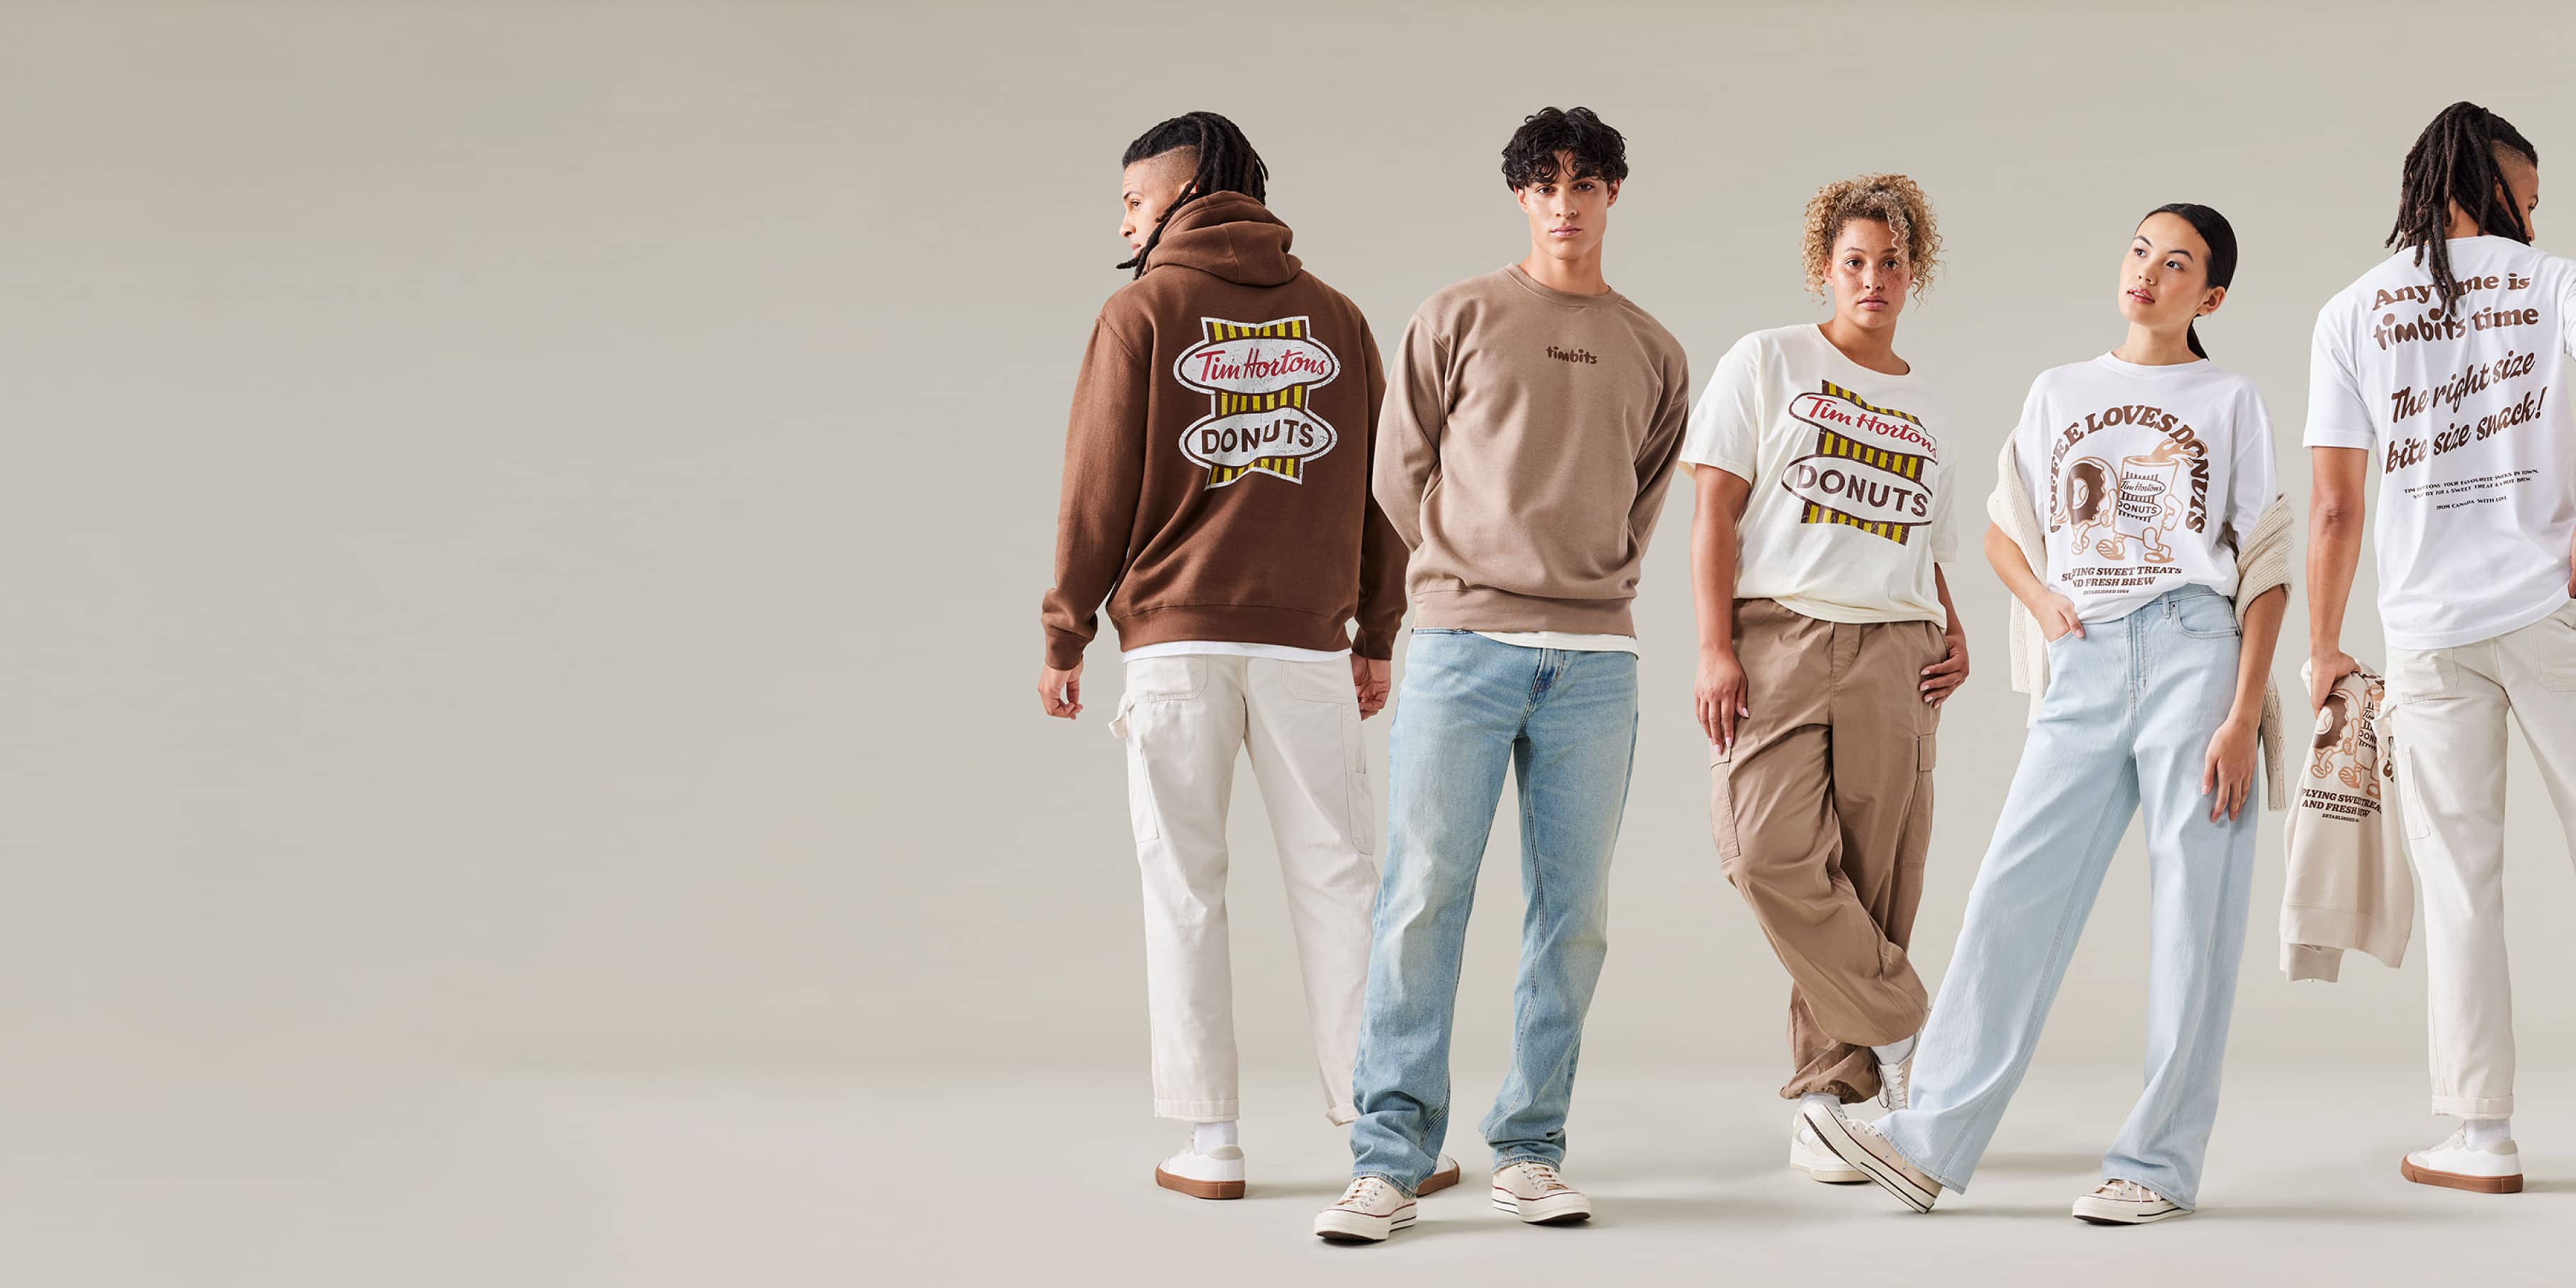 TimShop: Tim Hortons introduces nostalgic, vintage-inspired clothing line -  National